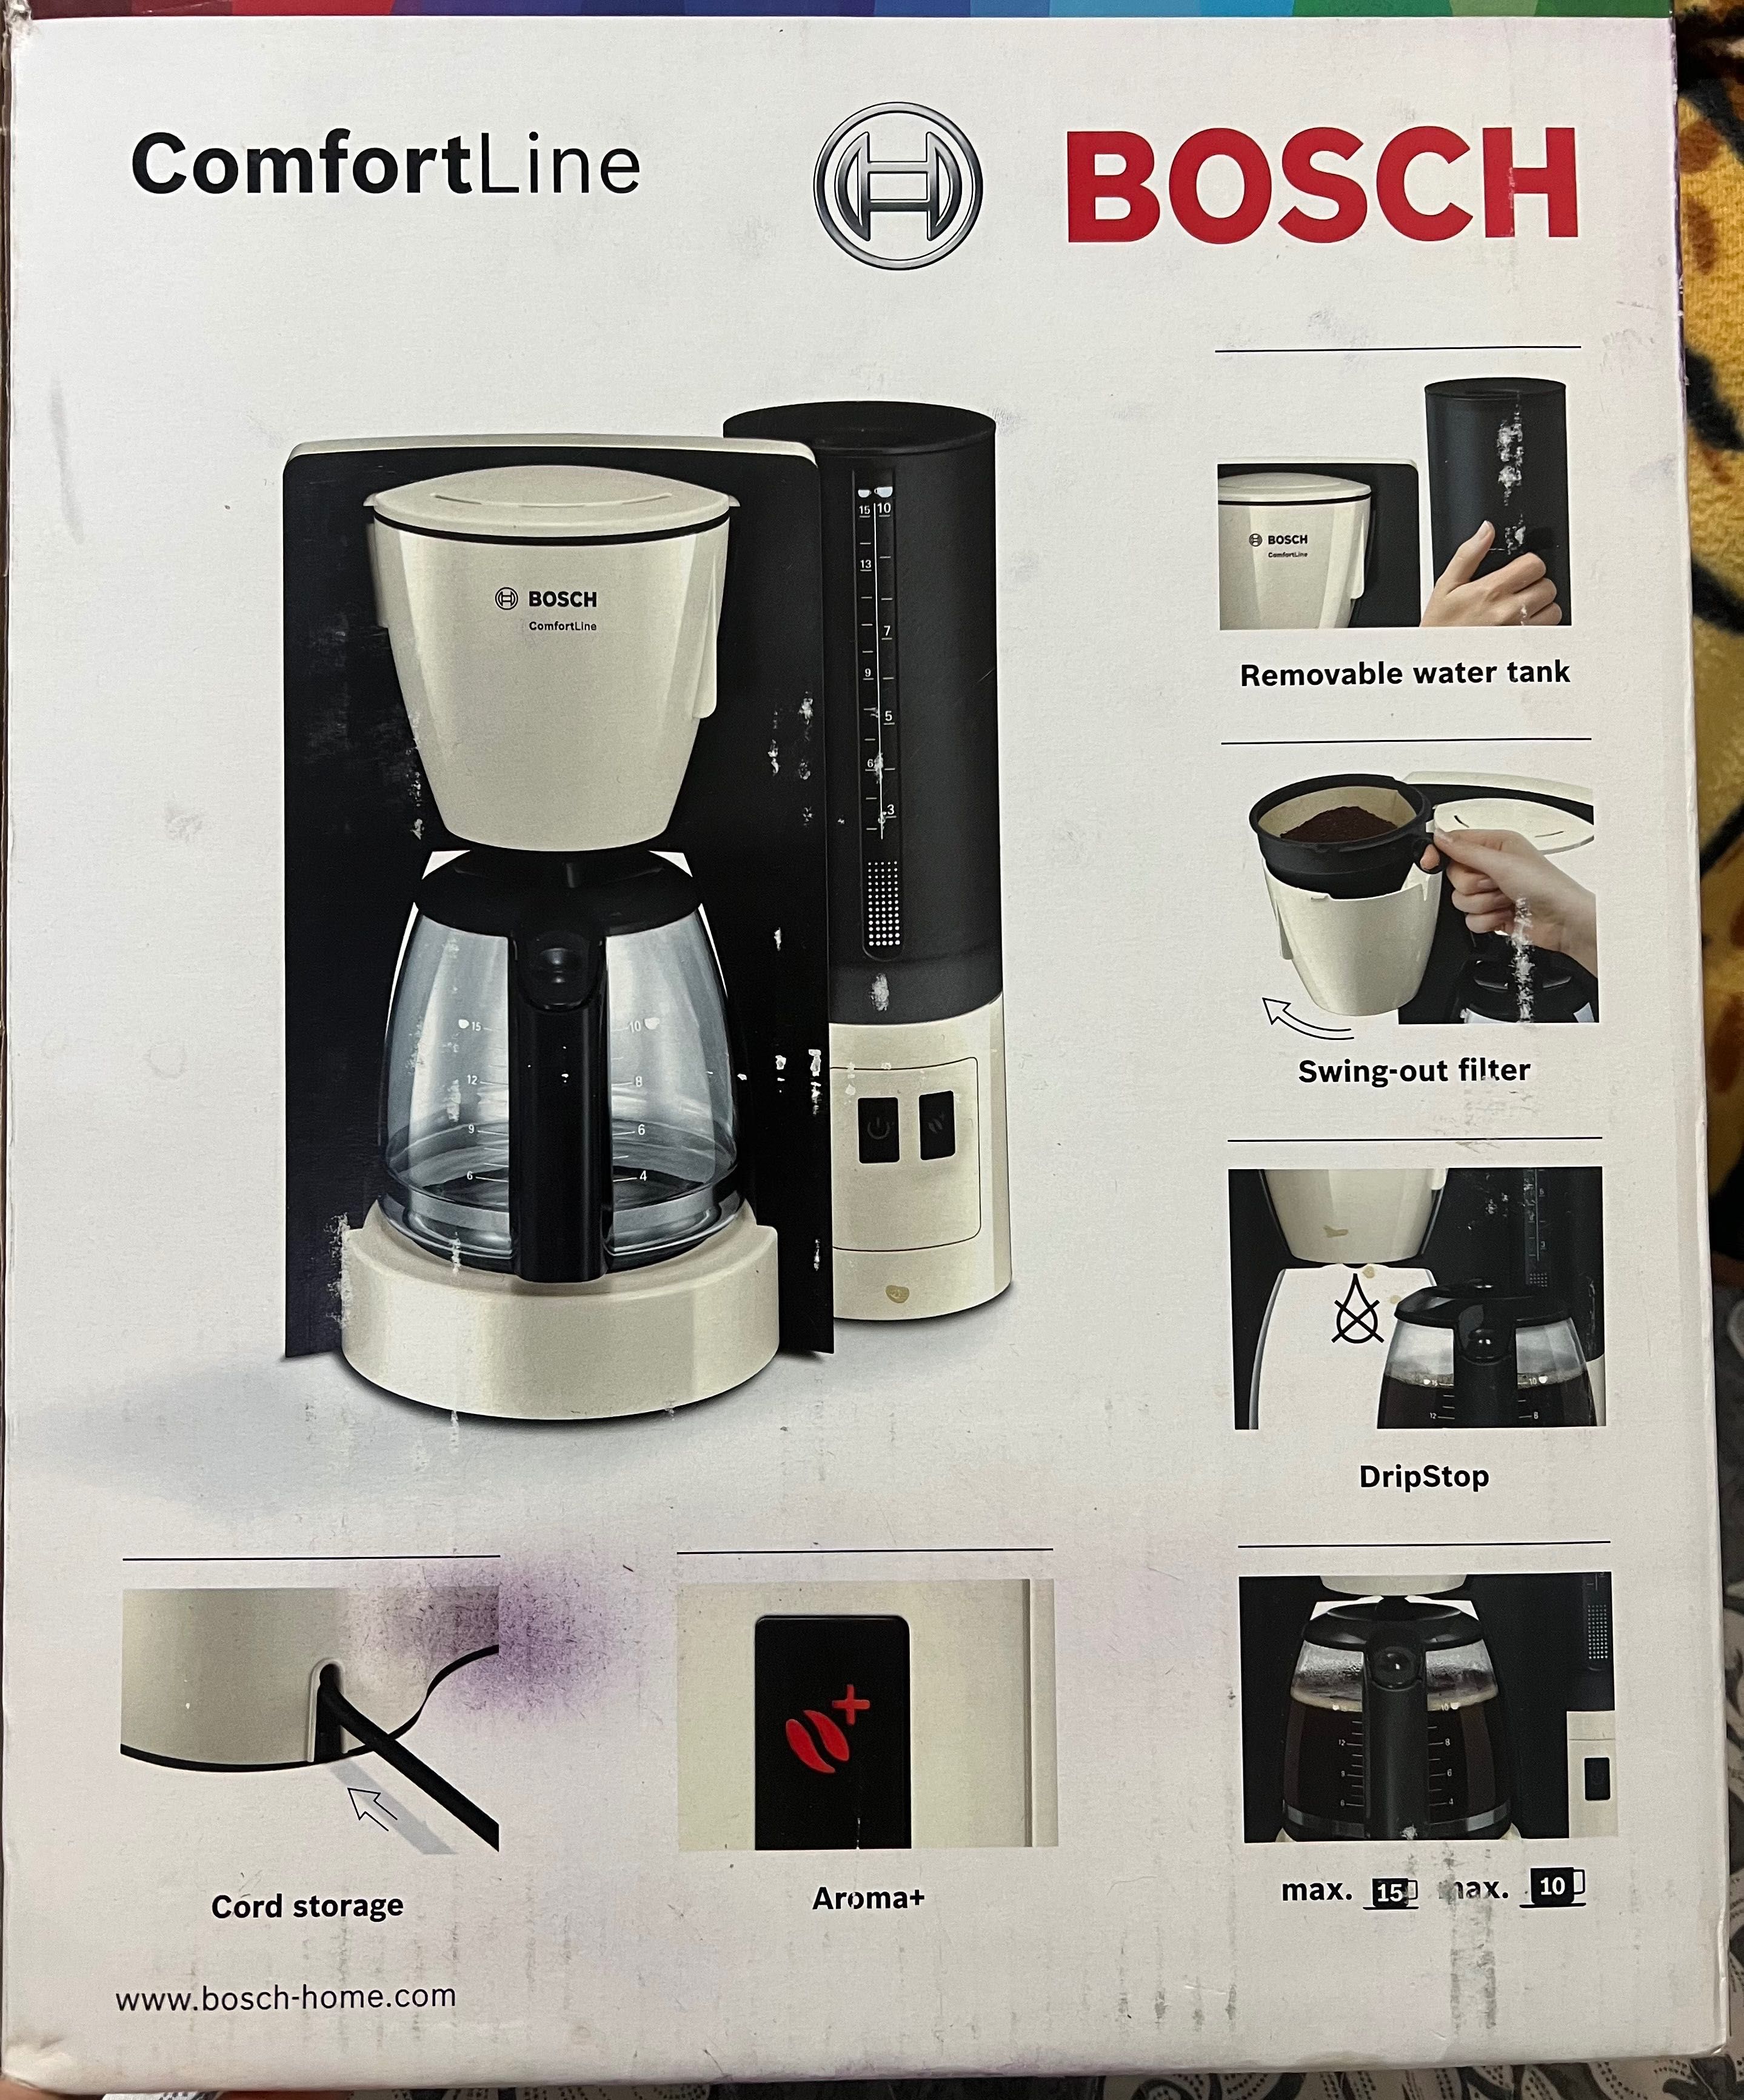 Кофеварка Bosch новая